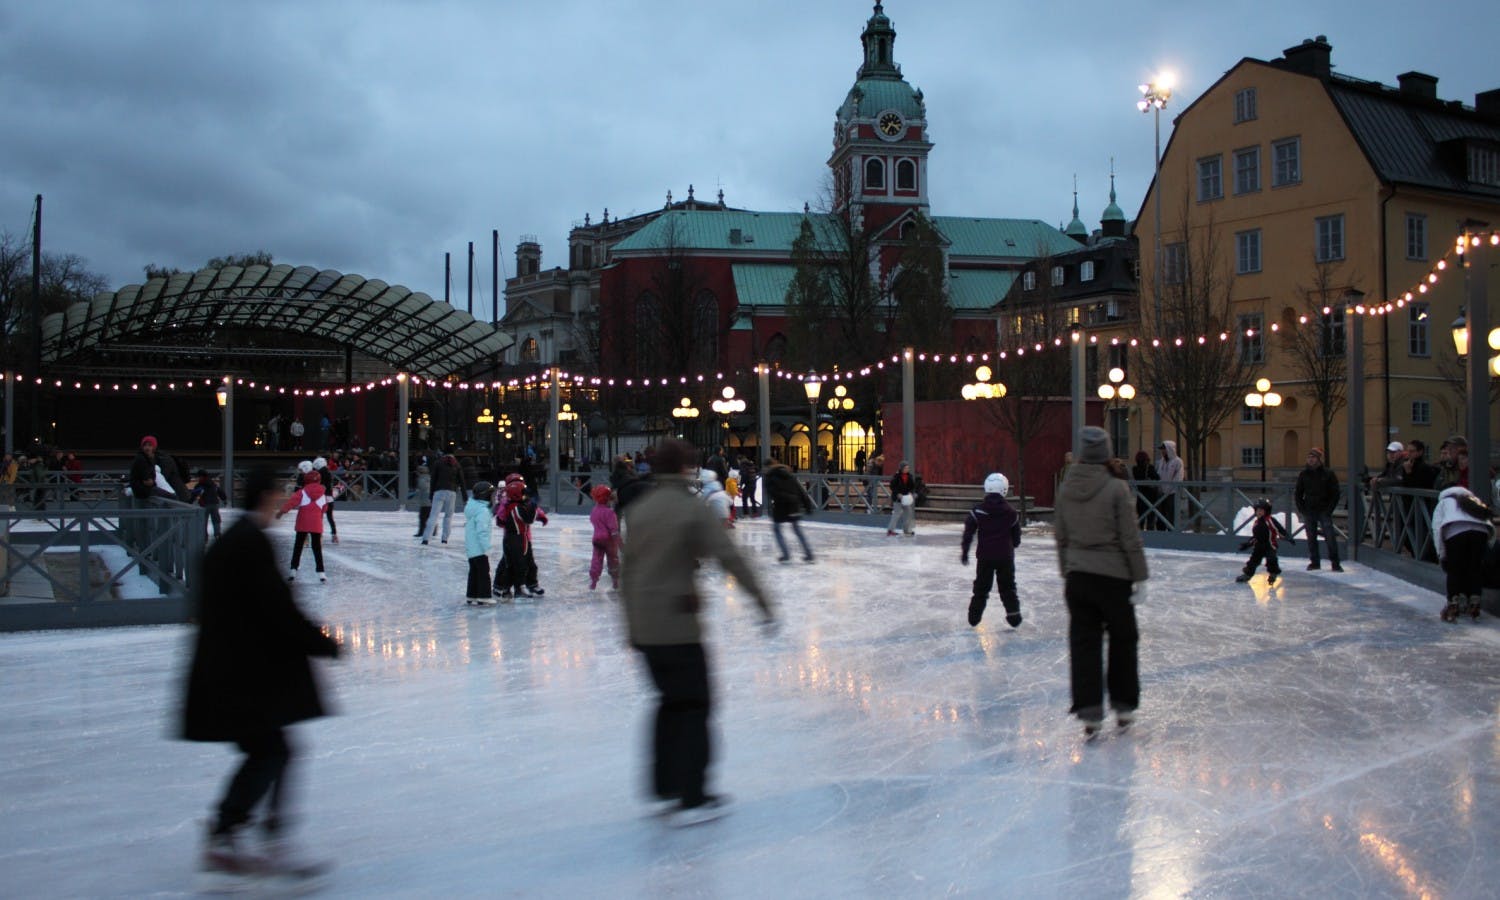 Kungsträdgården ice skating rink